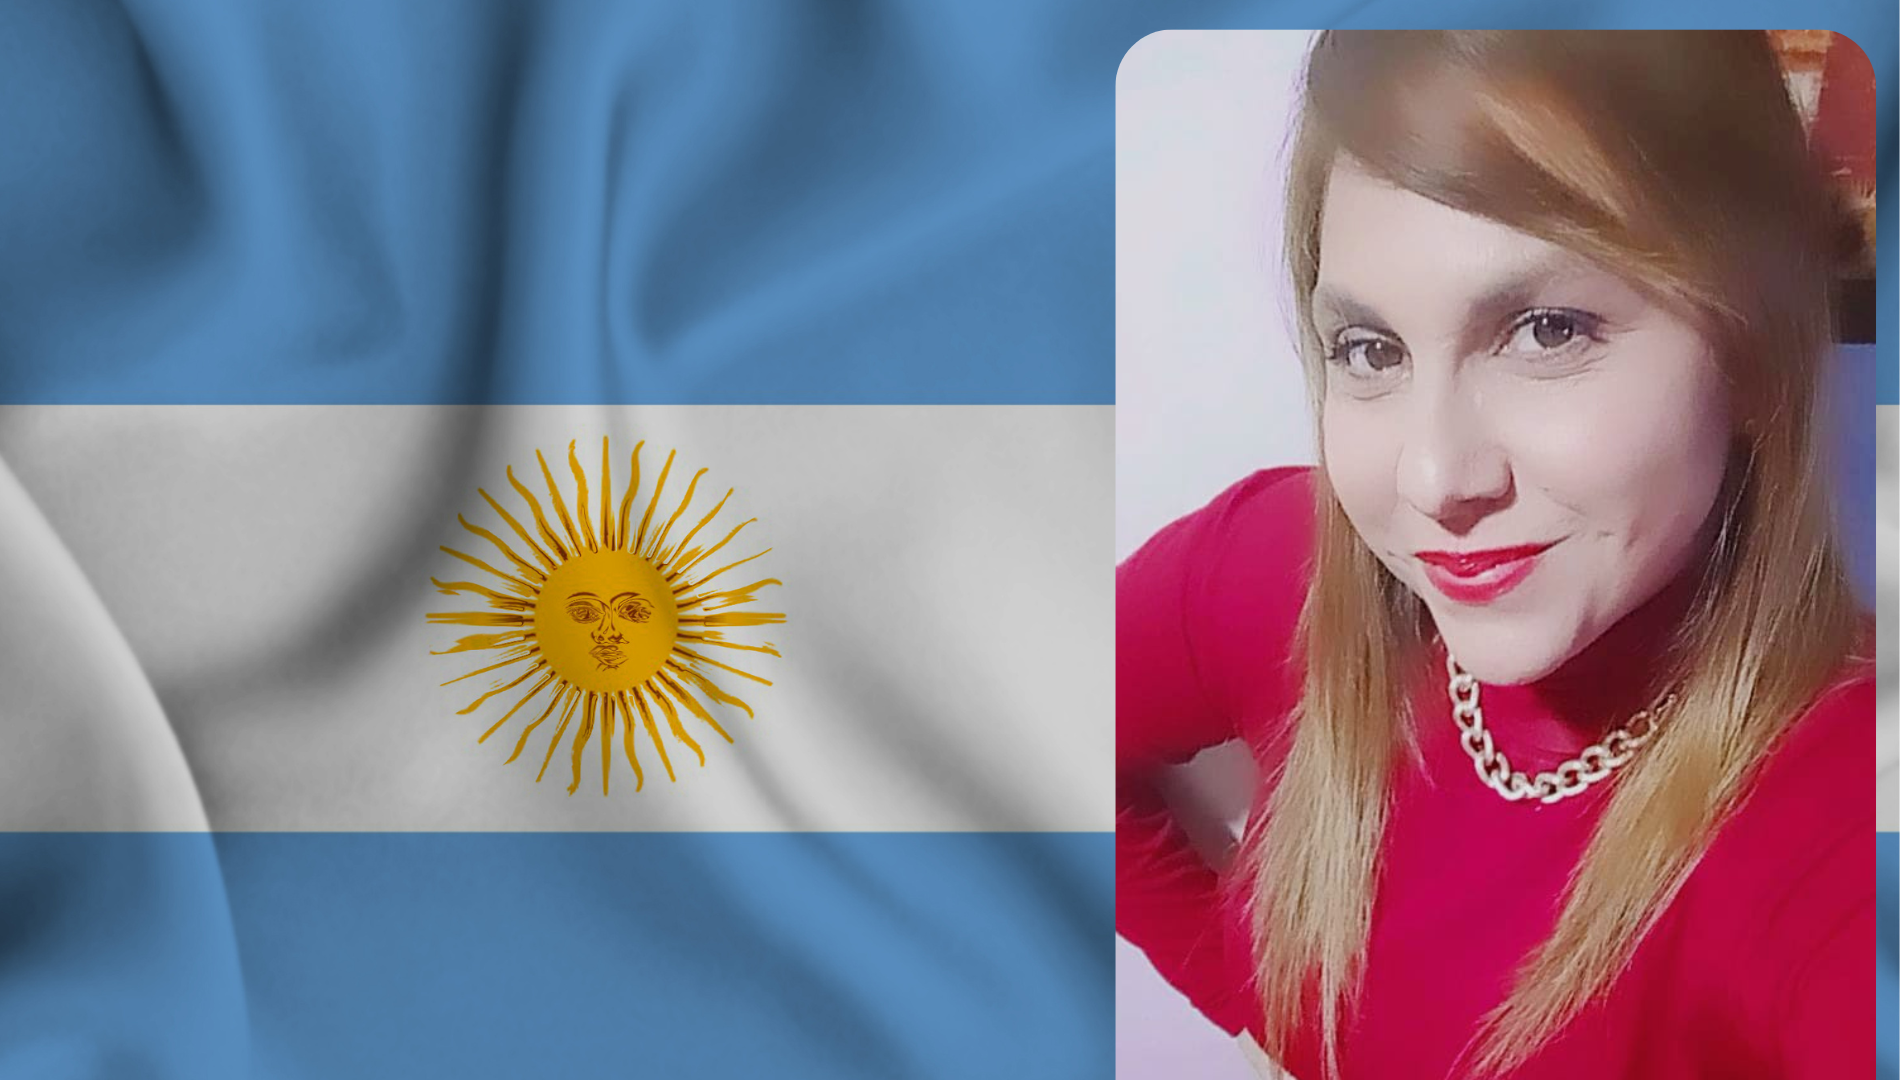 $!La hondureña Luisa Lily Morales contó la difícil situación y económica que enfrenta Argentina, país en el que vive desde hace años junto a sus tres hijos.